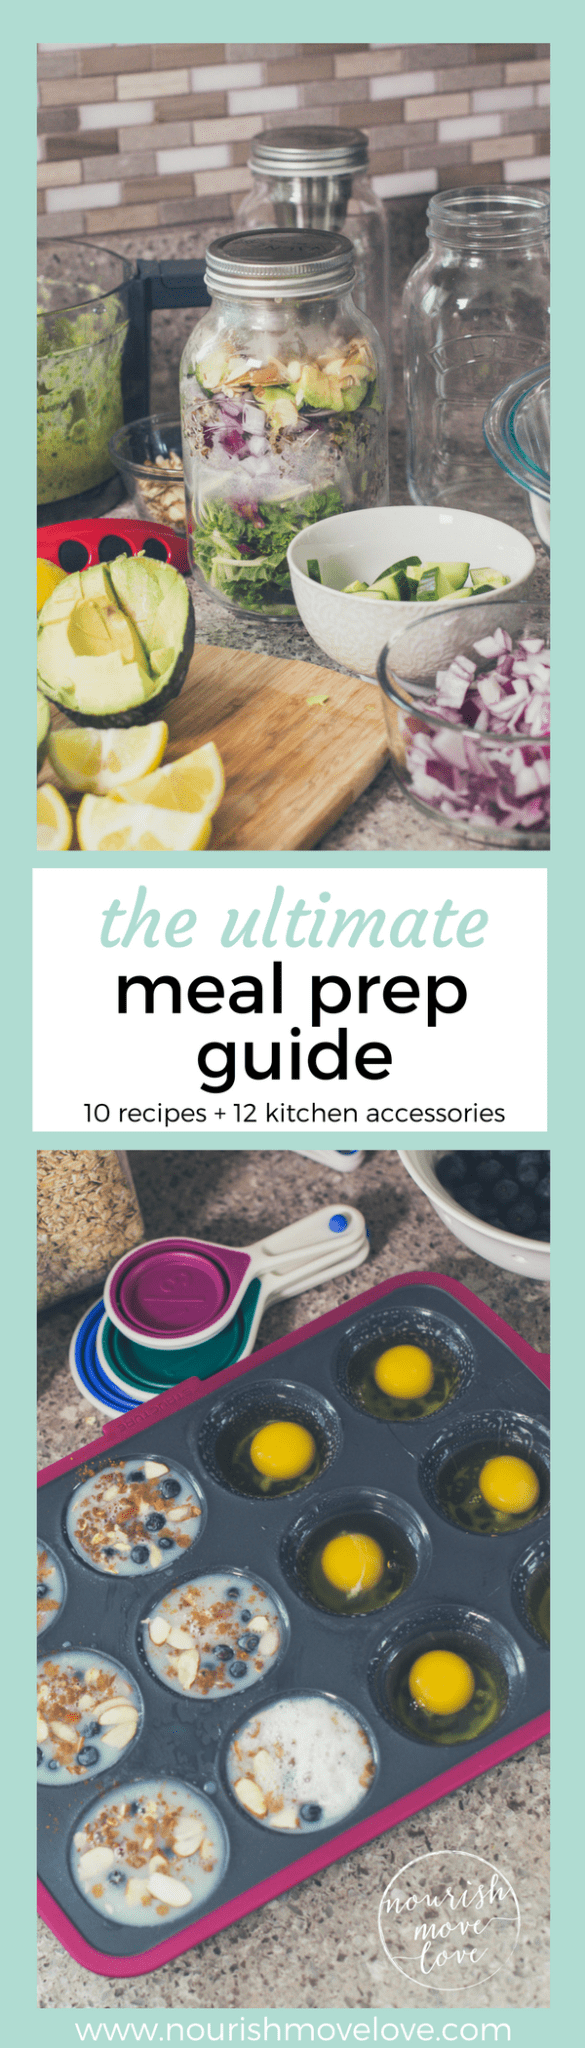 The Ultimate Meal Prep Guide {kitchen accessories + recipes} | www.nourishmovelove.com